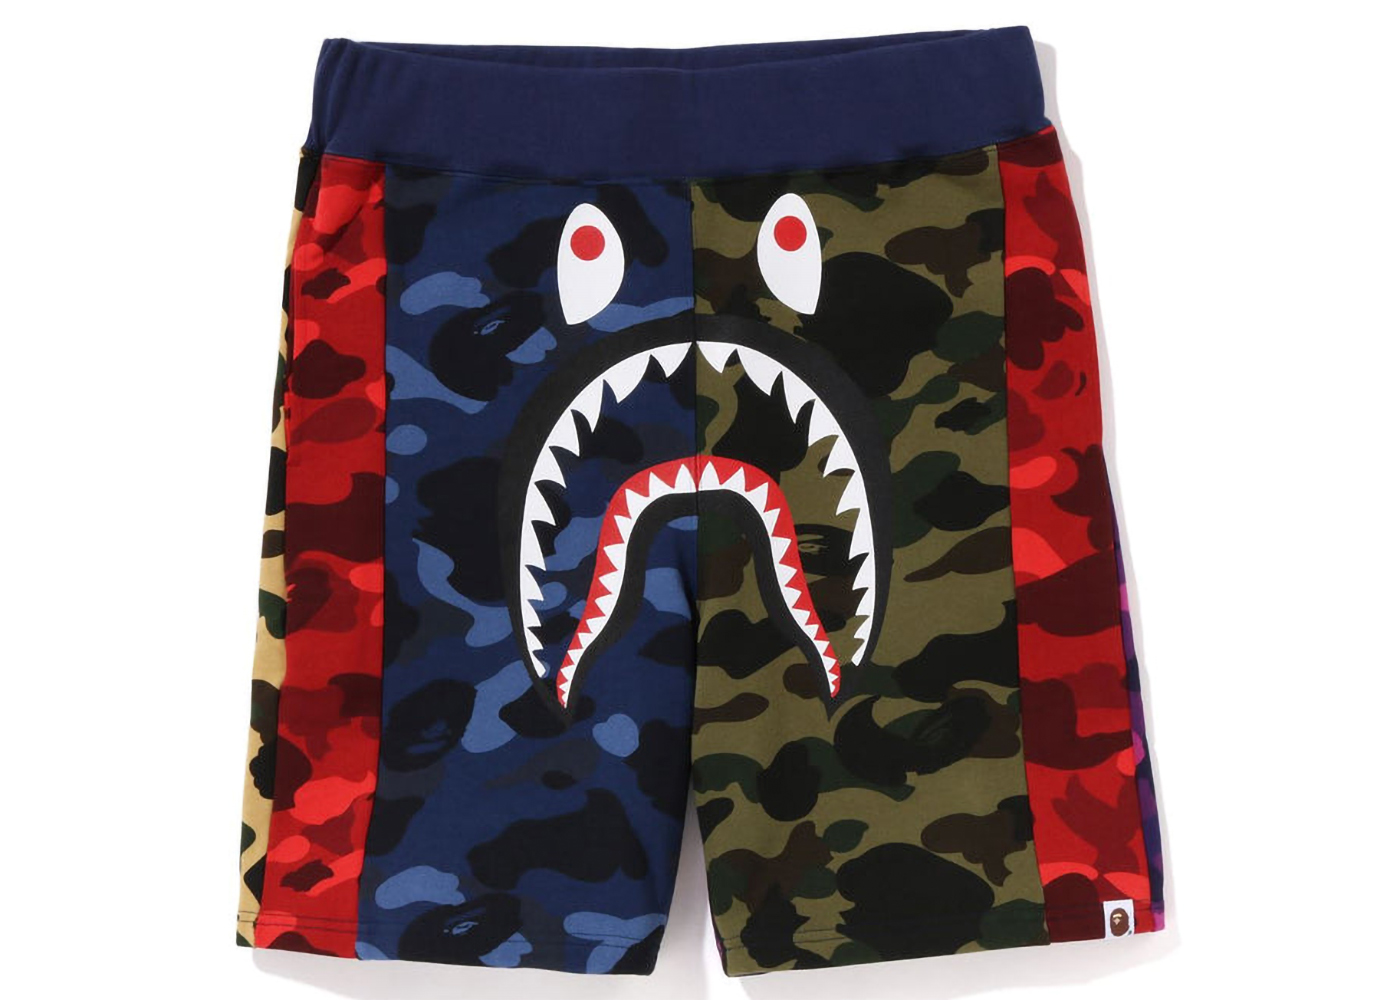 42cmx46cmcrazy camo mix shark shorts pants